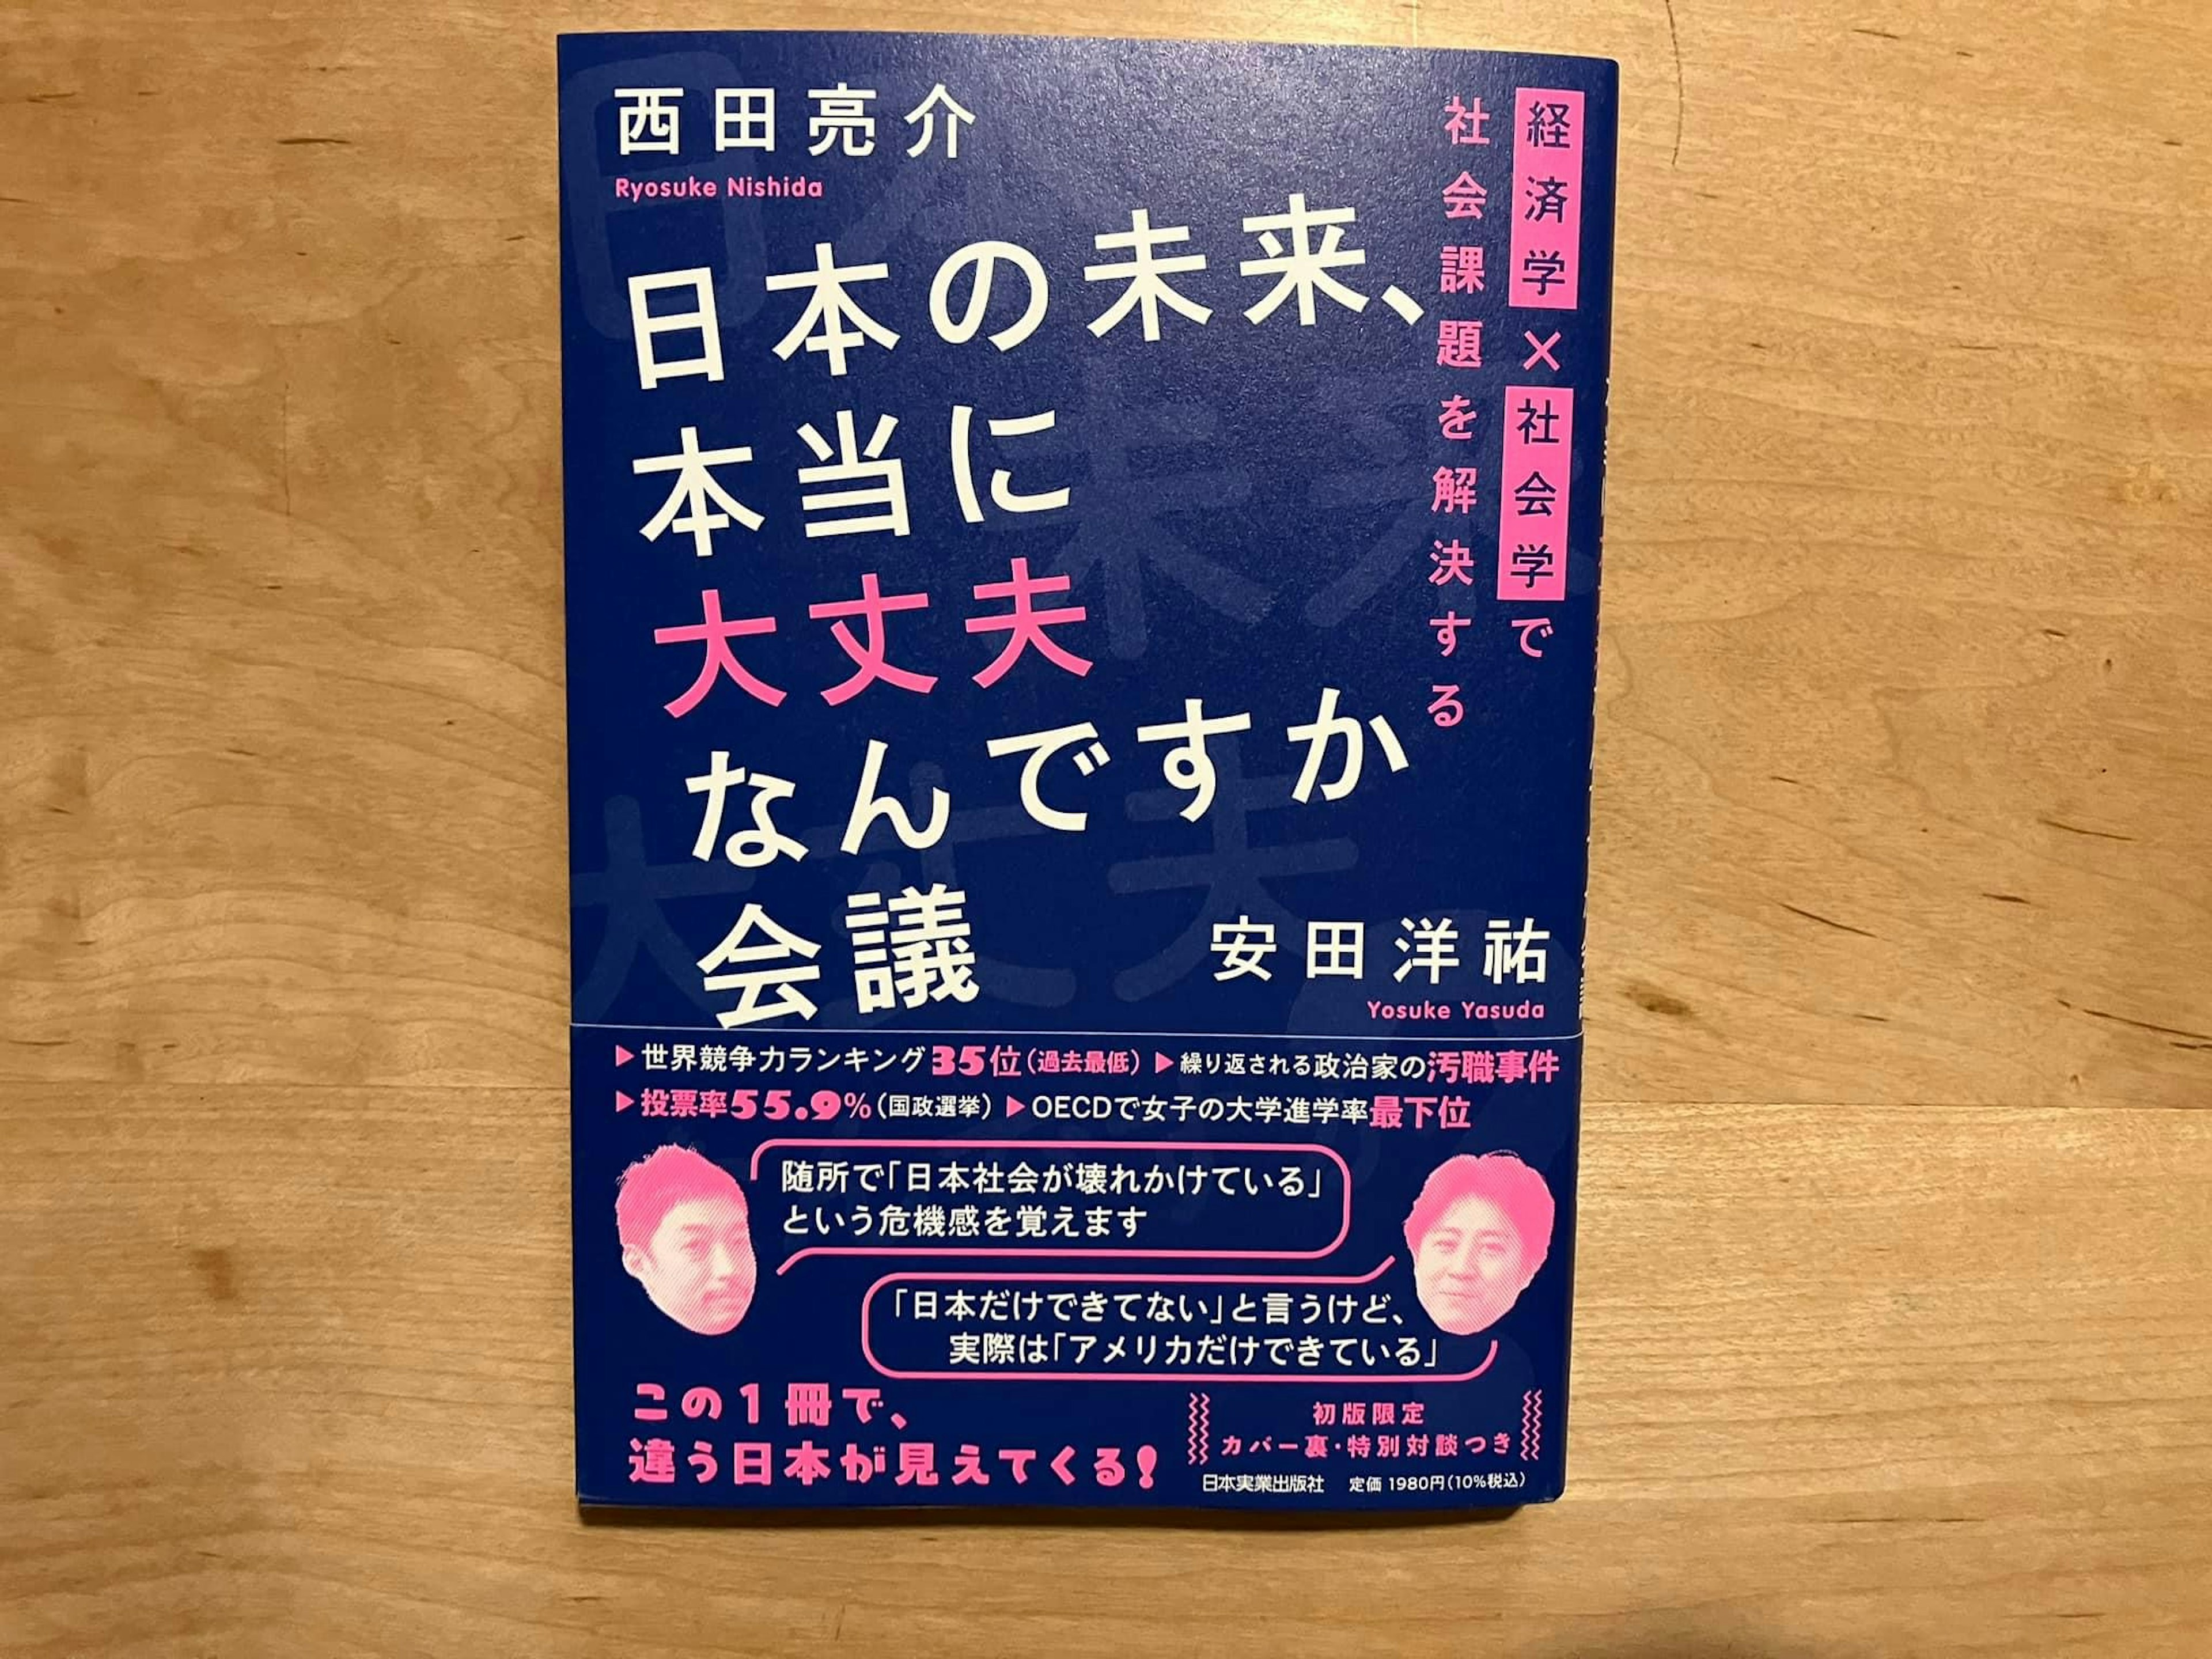 西田亮介、安田洋祐「日本の未来、本当に大丈夫なんですか会議 経済学×社会学で社会課題を解決する」